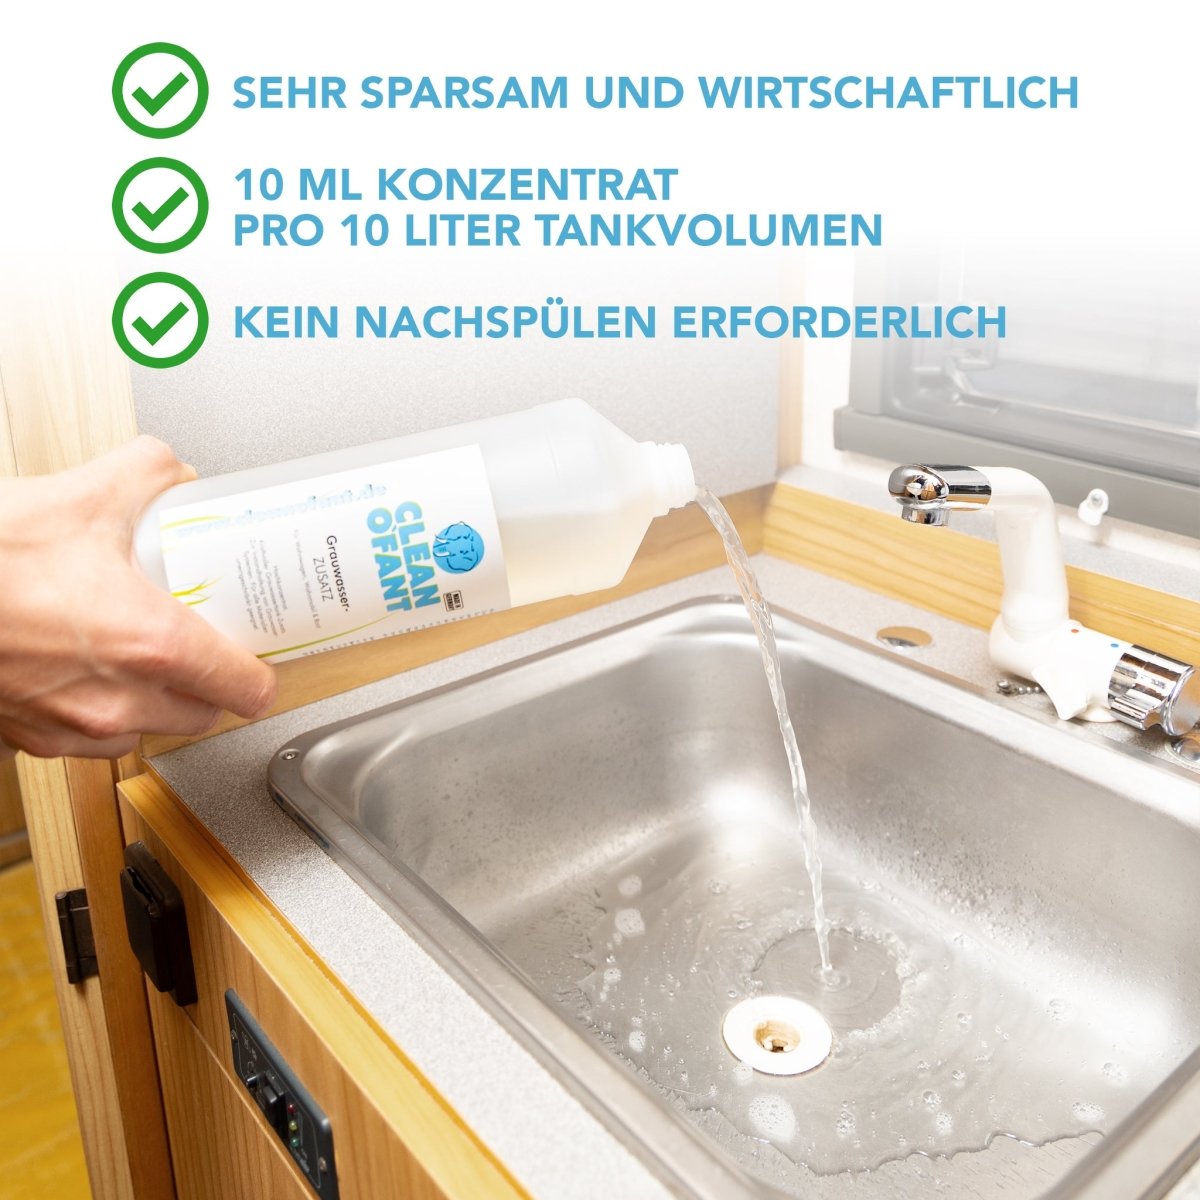 Grauwasser Zusatz - 1 Liter - CLEANOFANT